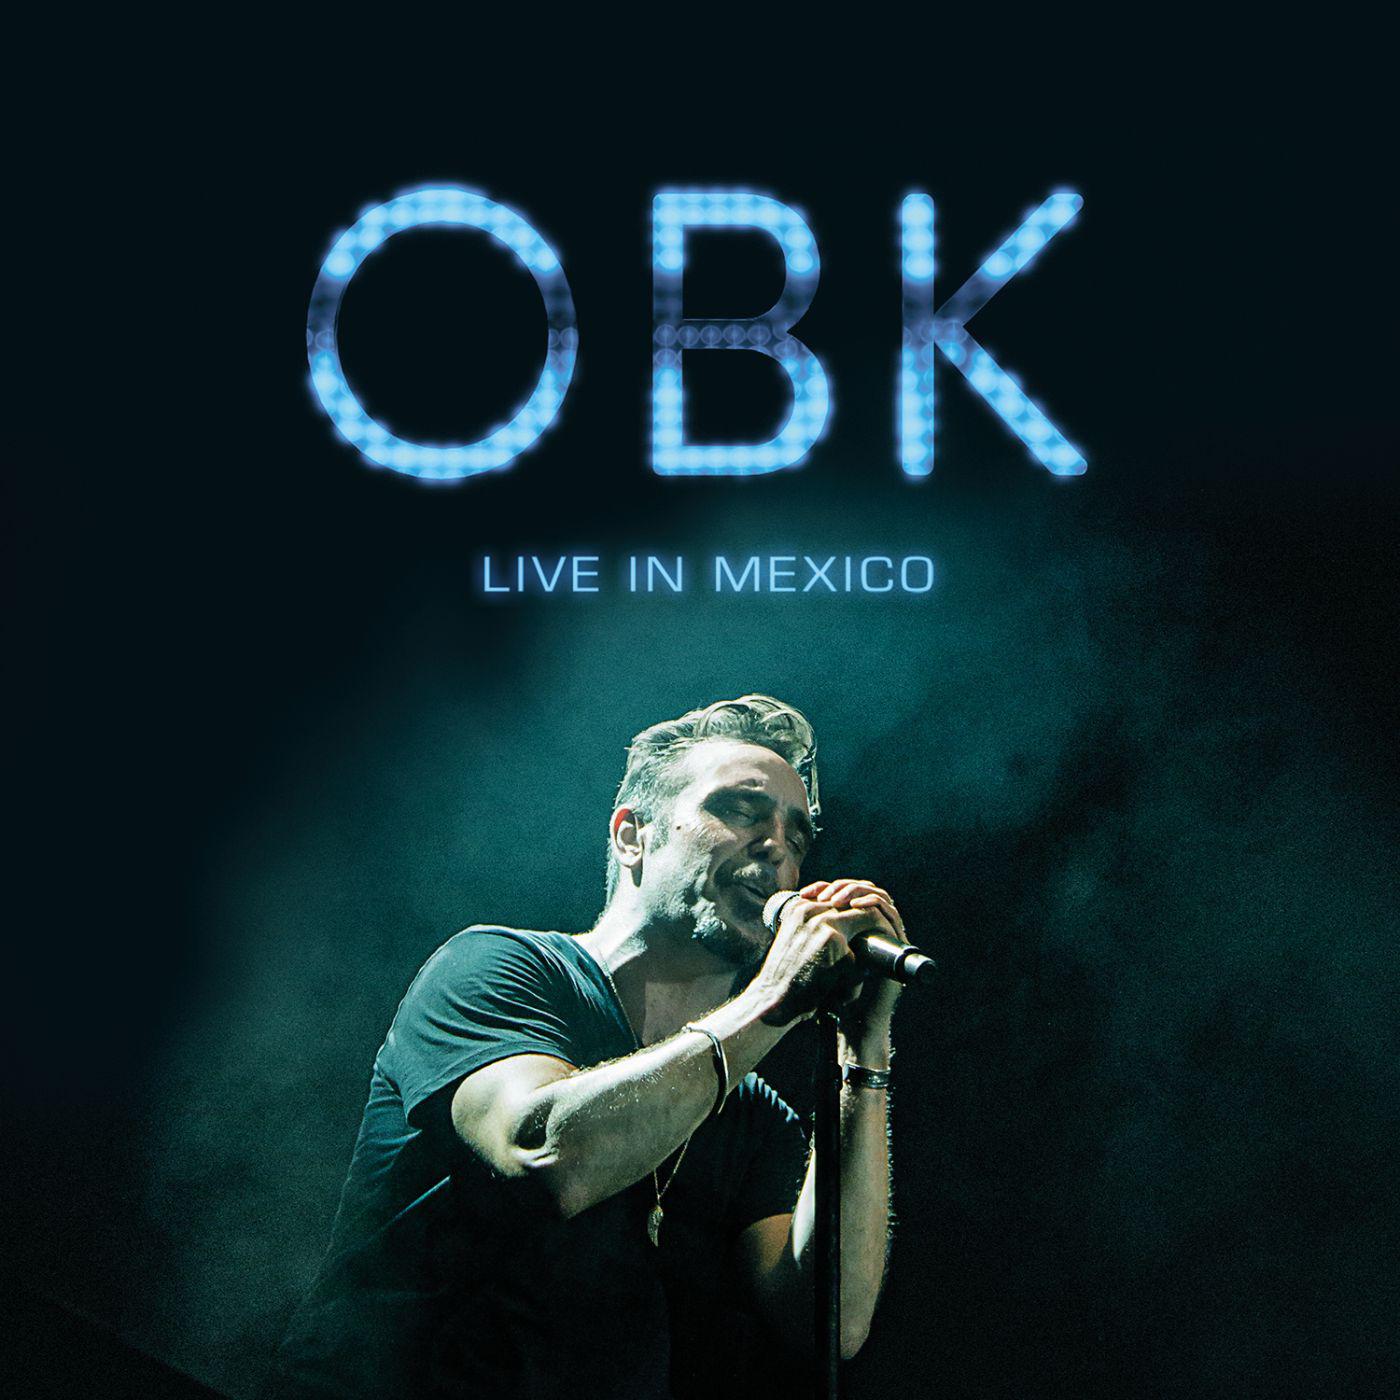 OBK - Siempre tú (Live in Mexico)